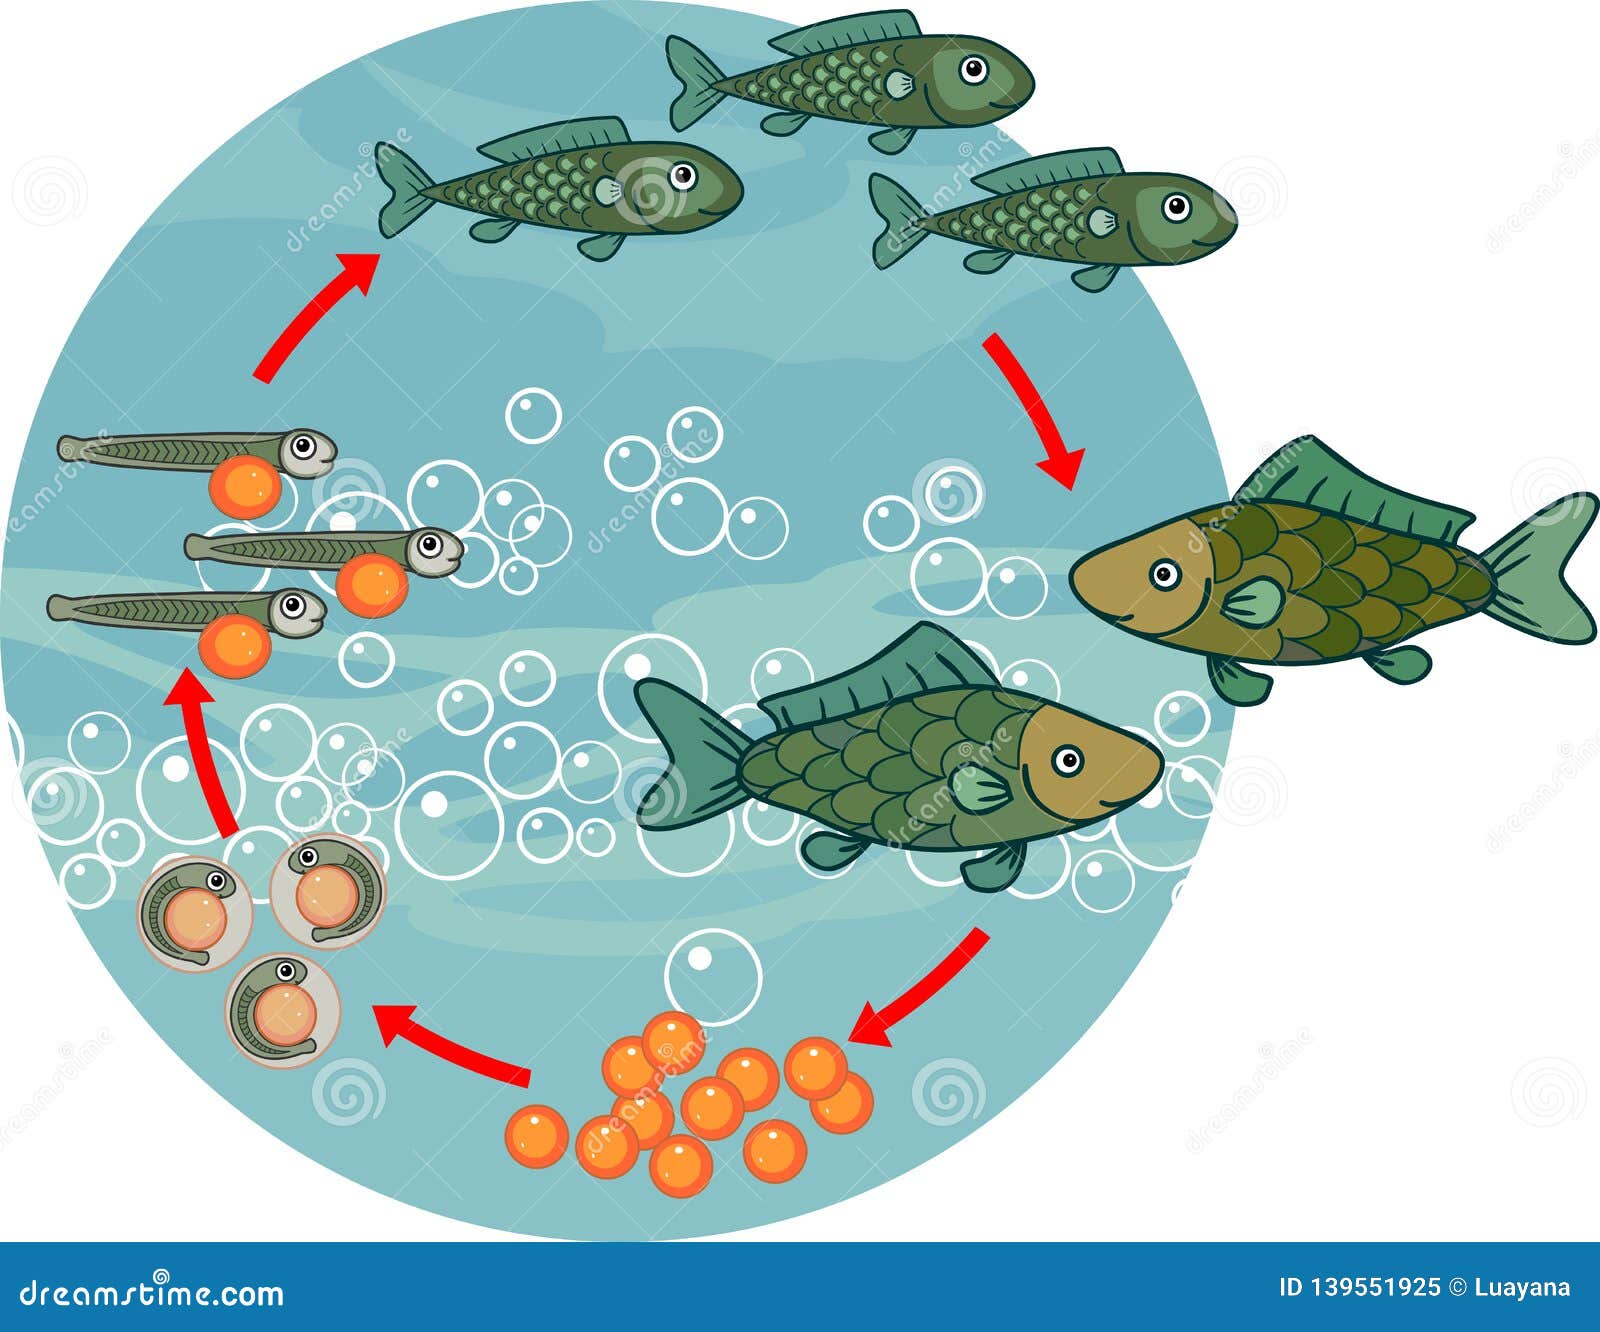 Размножение животных рыбы. Цикл развития рыбы схема. Жизненный цикл развития рыбы. Стадии цикла развития рыб. Этапы размножения рыб.